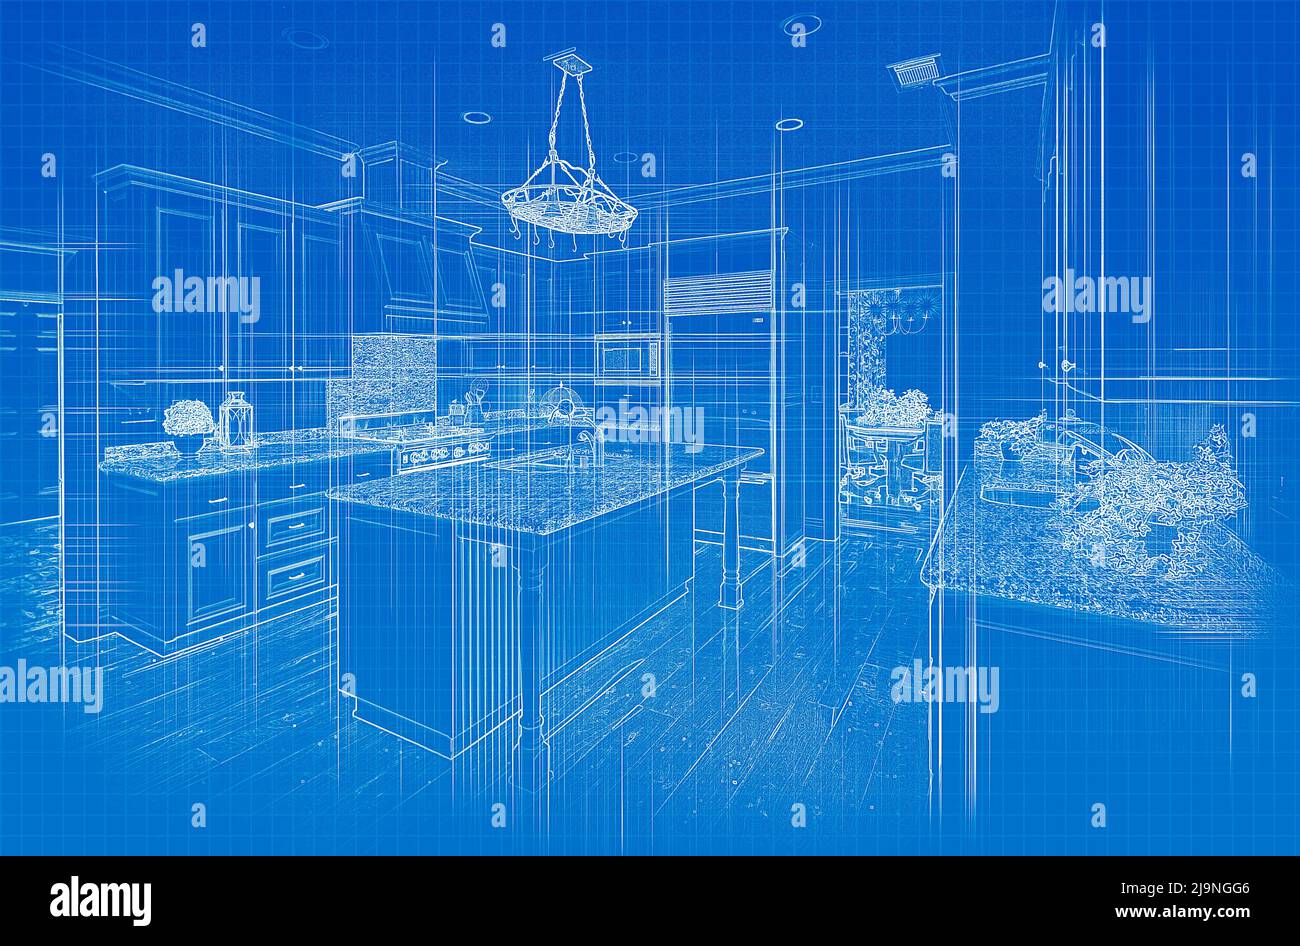 Benutzerdefinierte Küche Blueprint Design Zeichnung Stockfoto